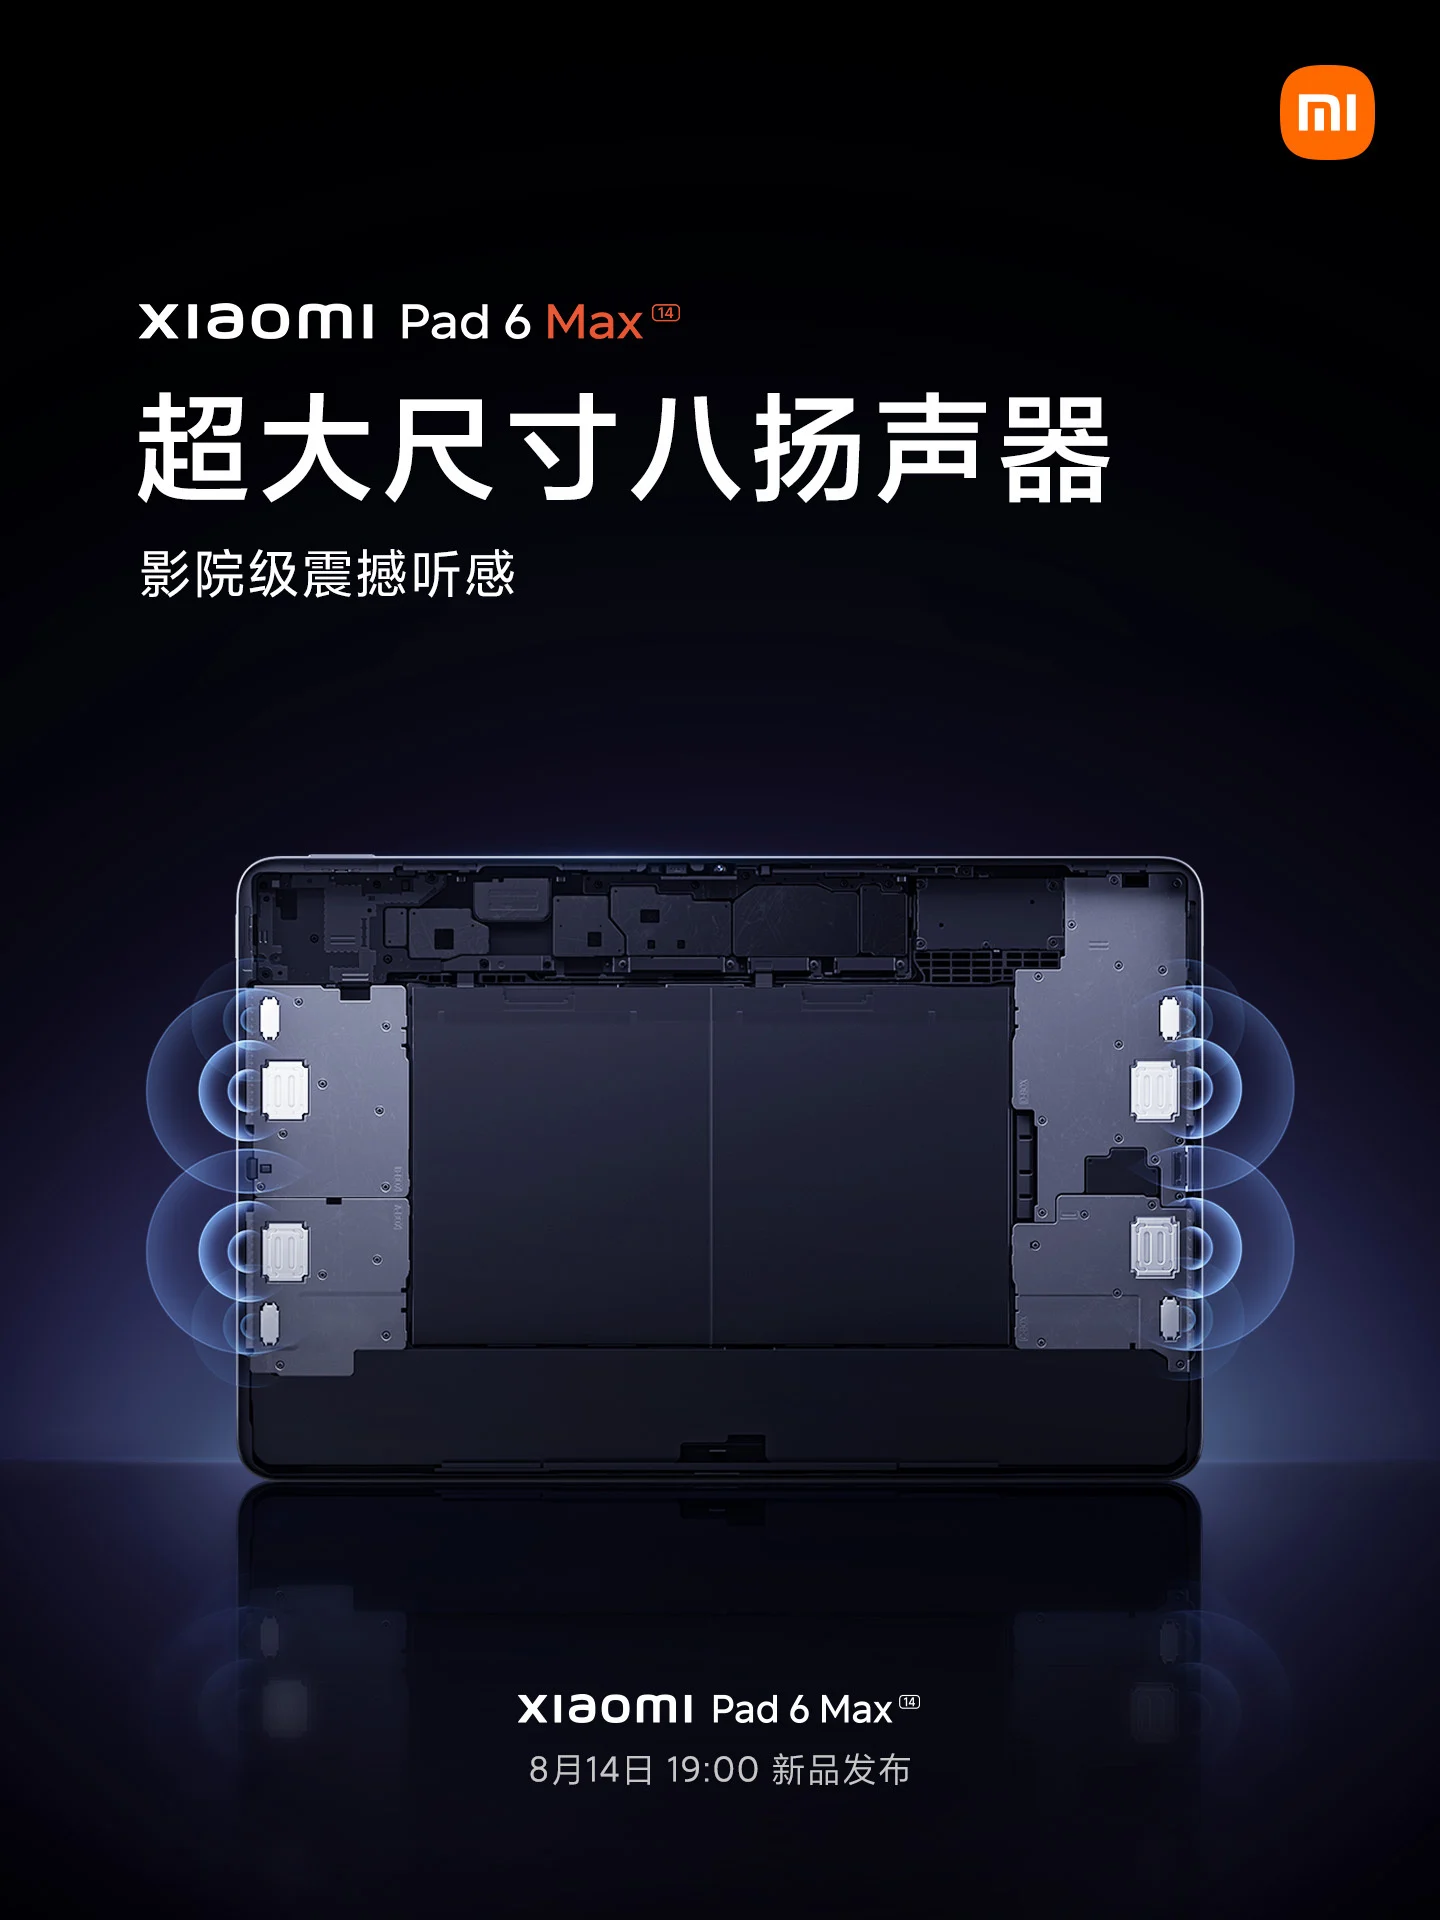 Розмір дисплея Xiaomi Pad 6 Max, чипсет, акумулятор та інші подробиці підтверджені офіційно